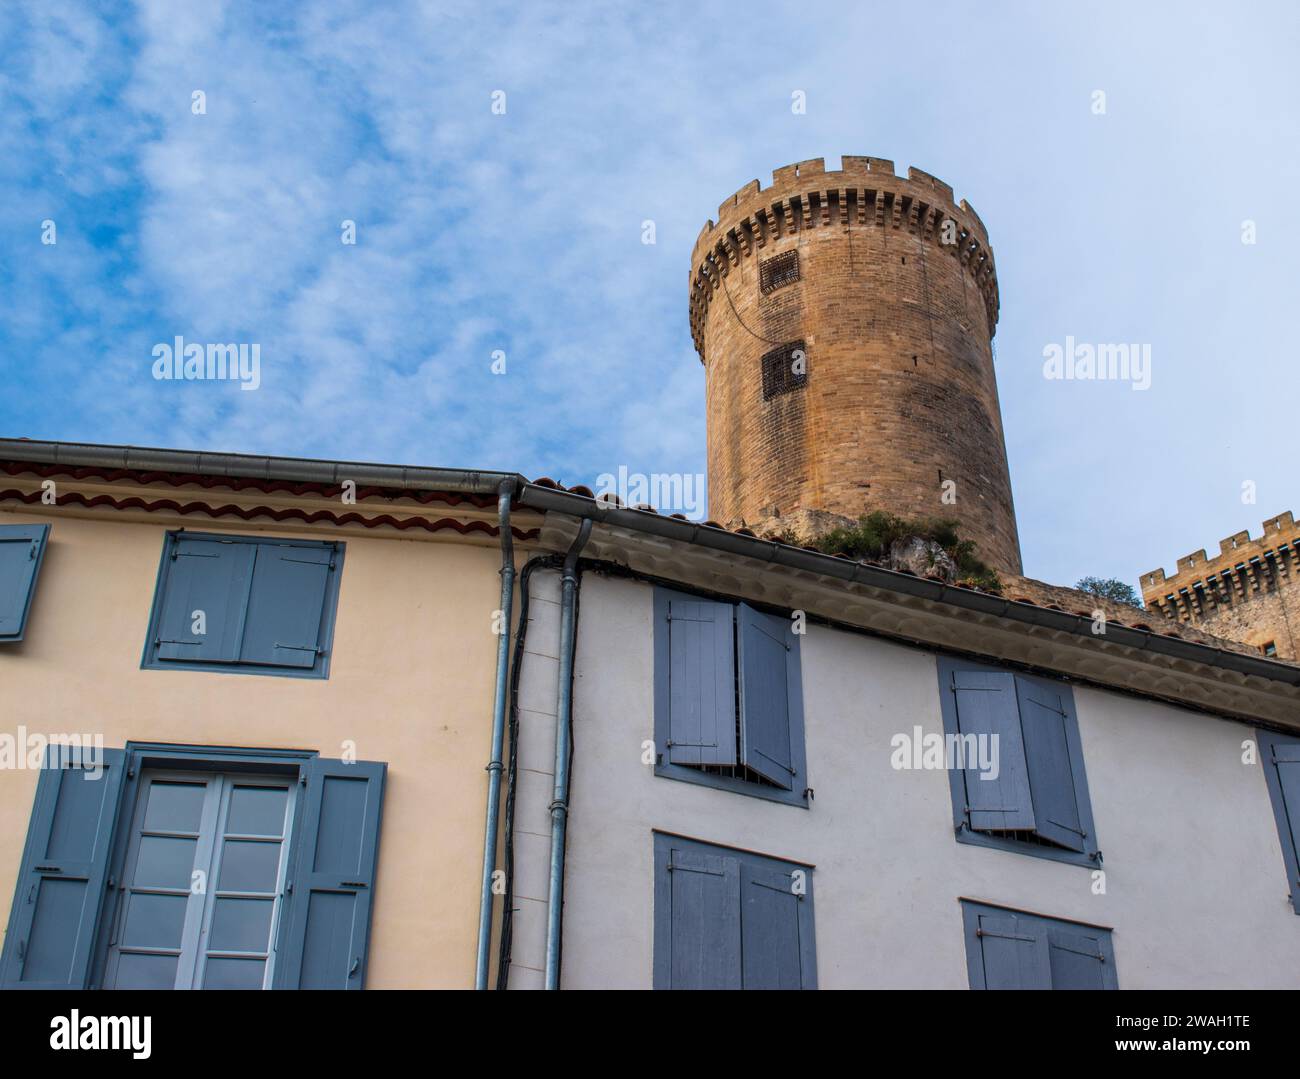 La tour ronde du Château de Foix en Ariège, France Banque D'Images